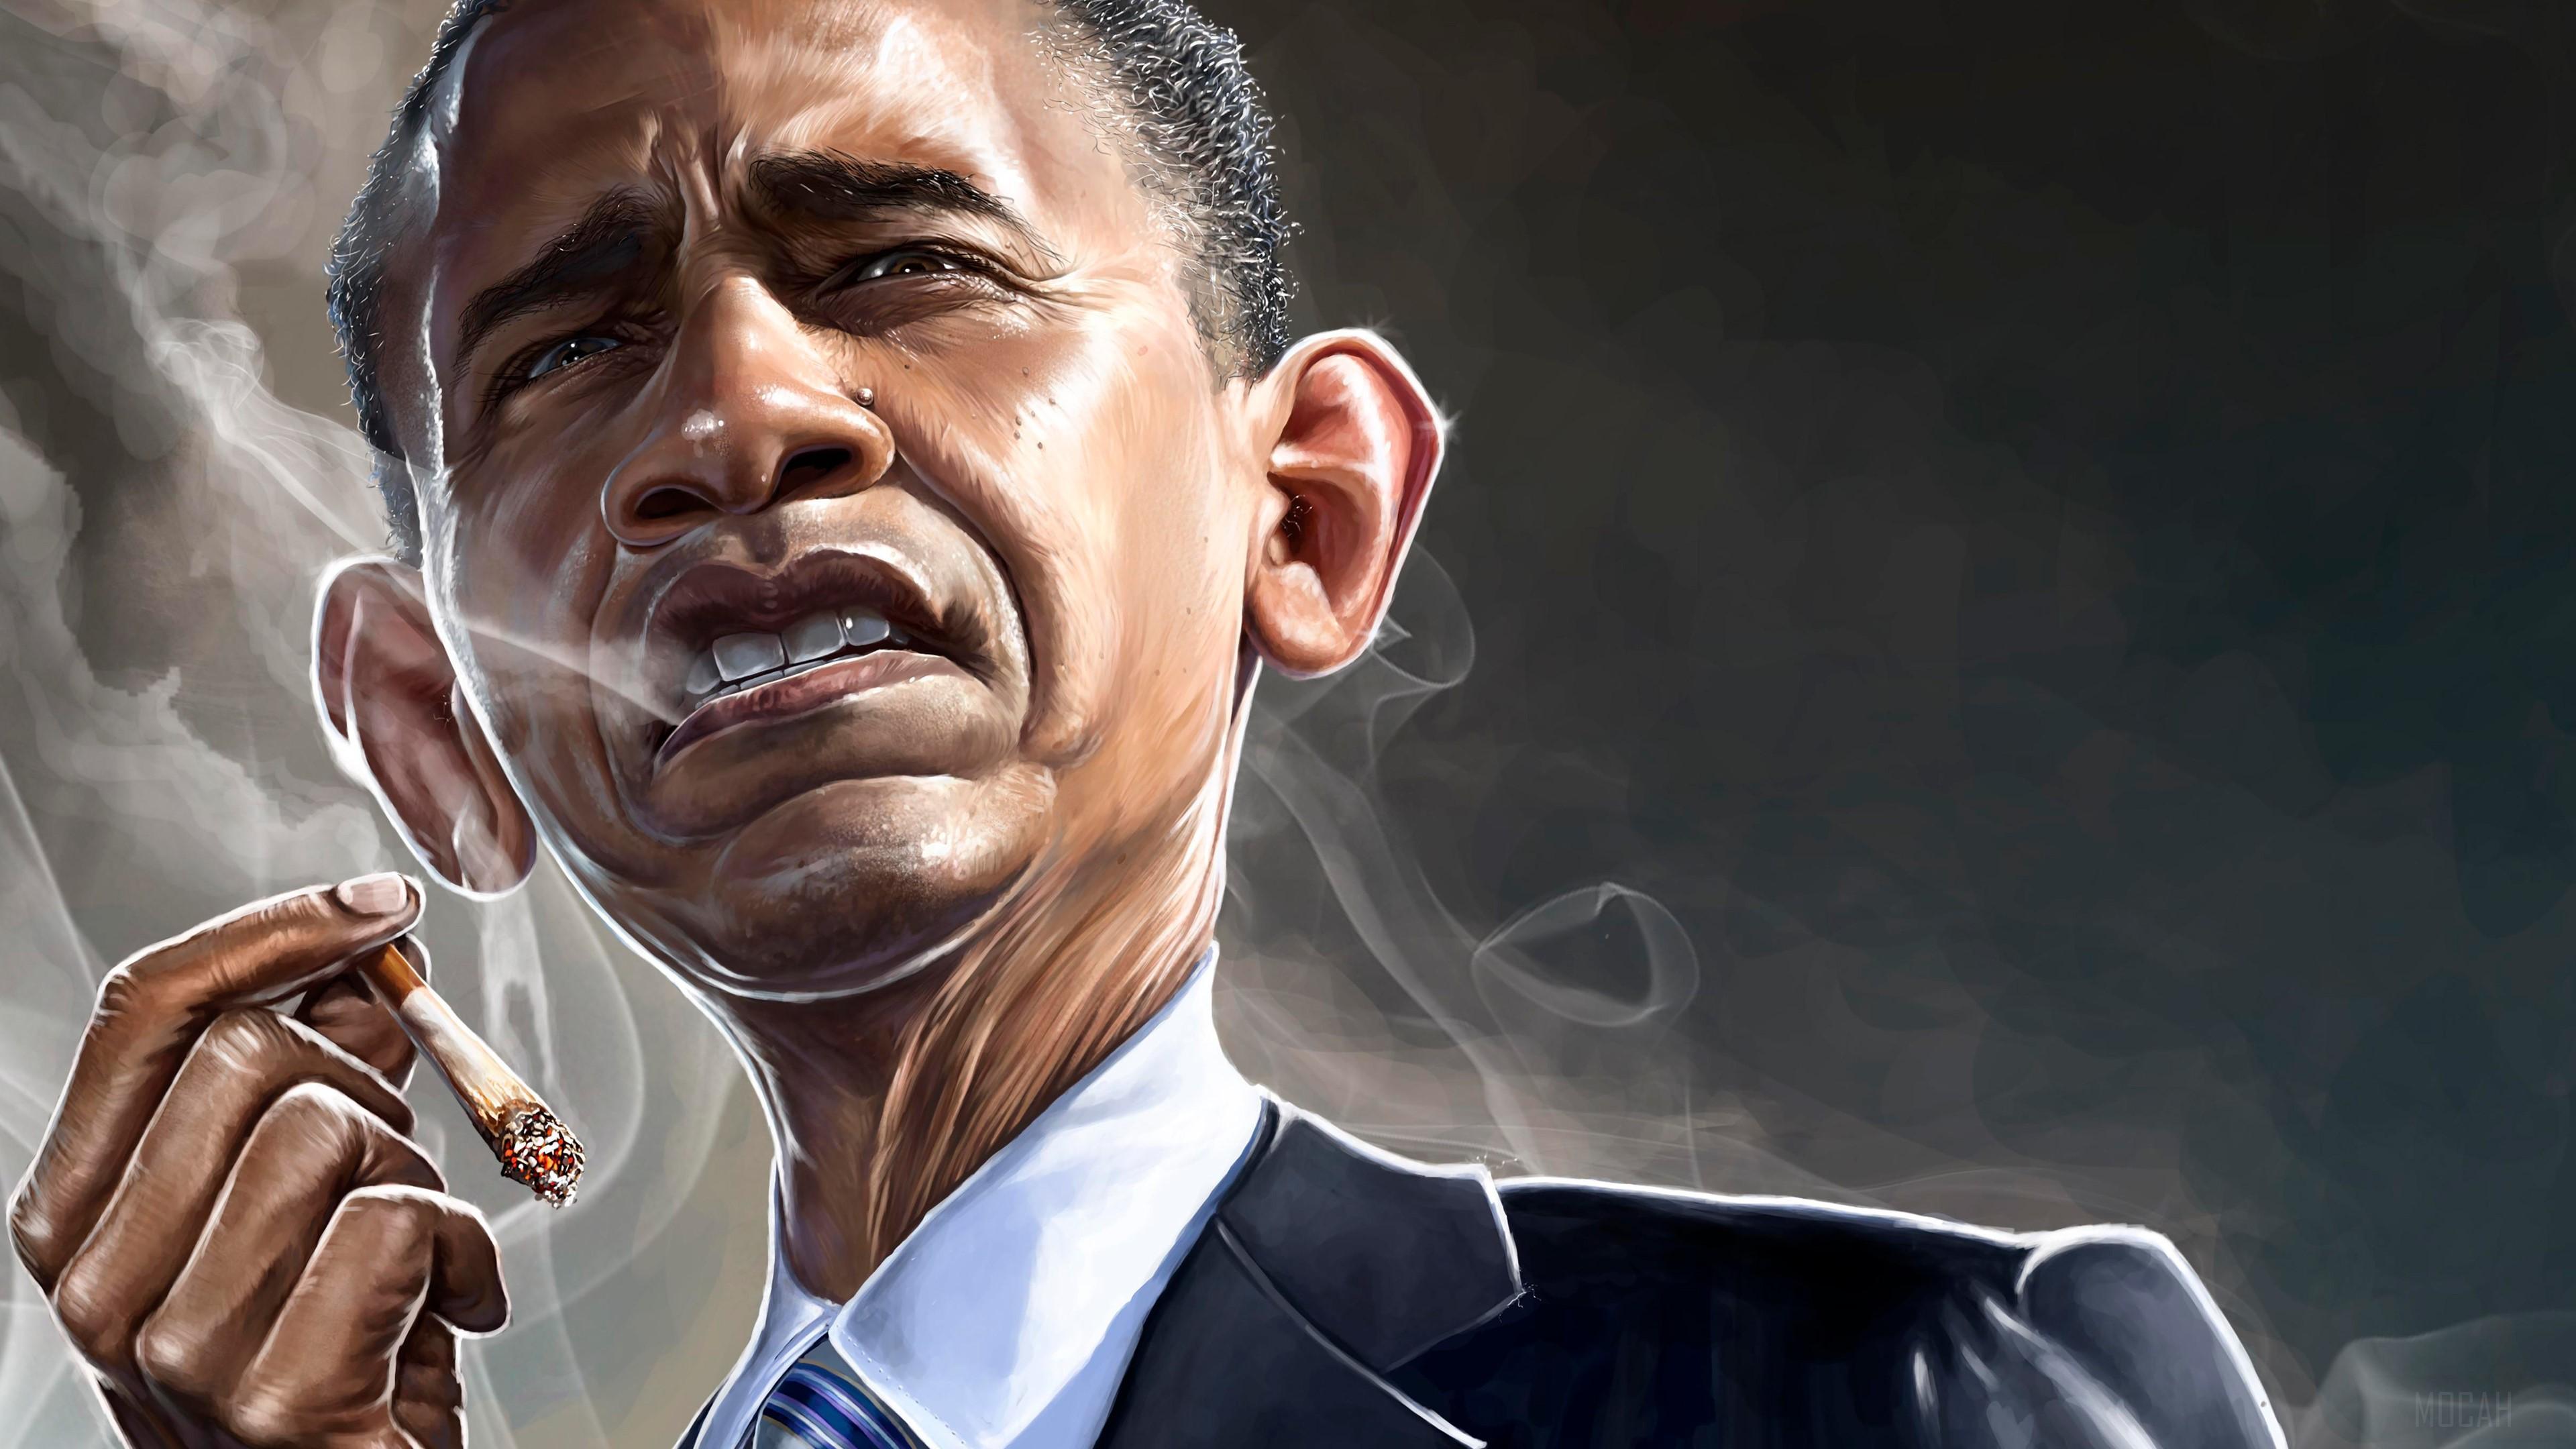 HD wallpaper, Barack Obama Smoking 4K